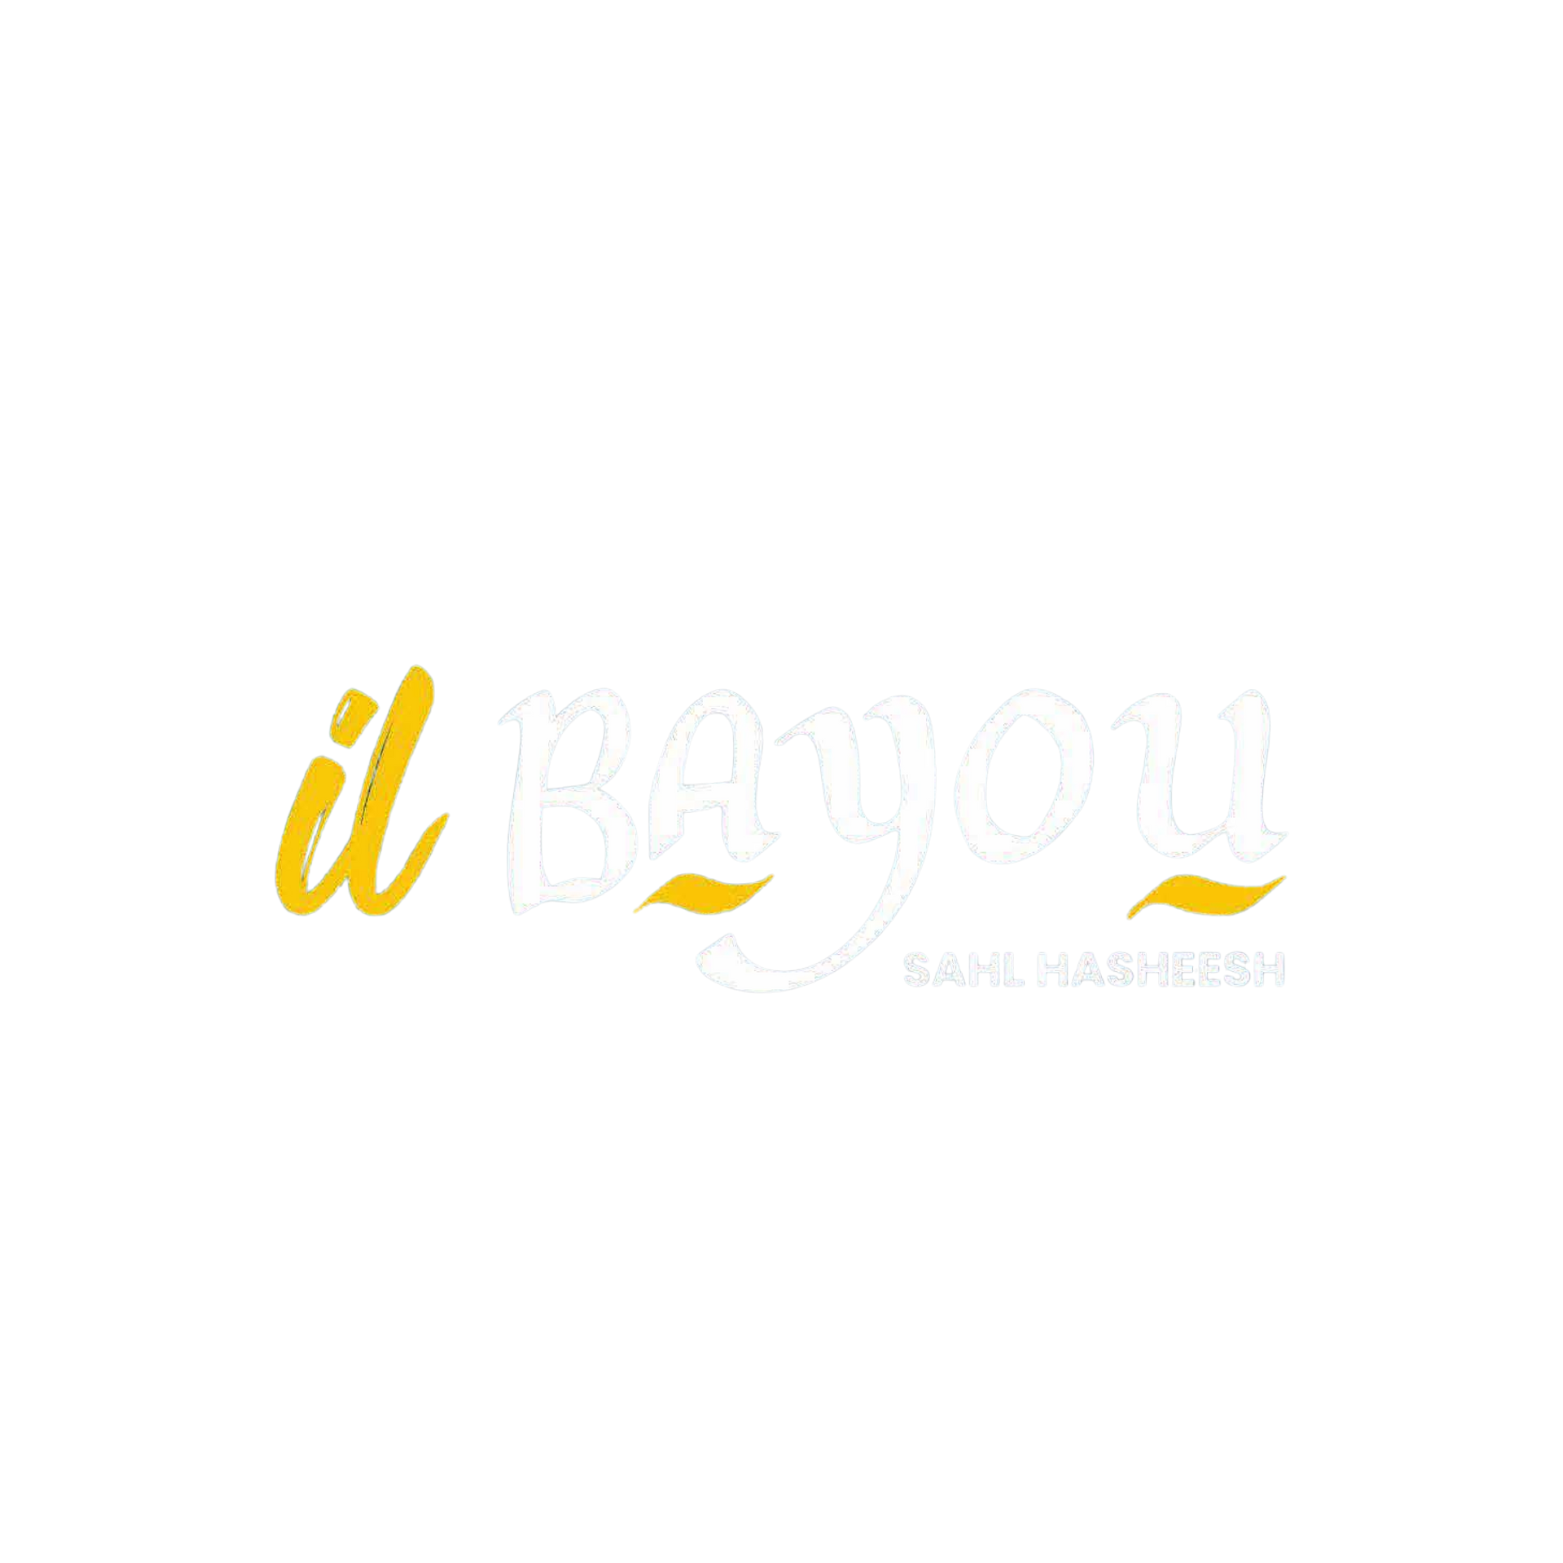 ilbayou